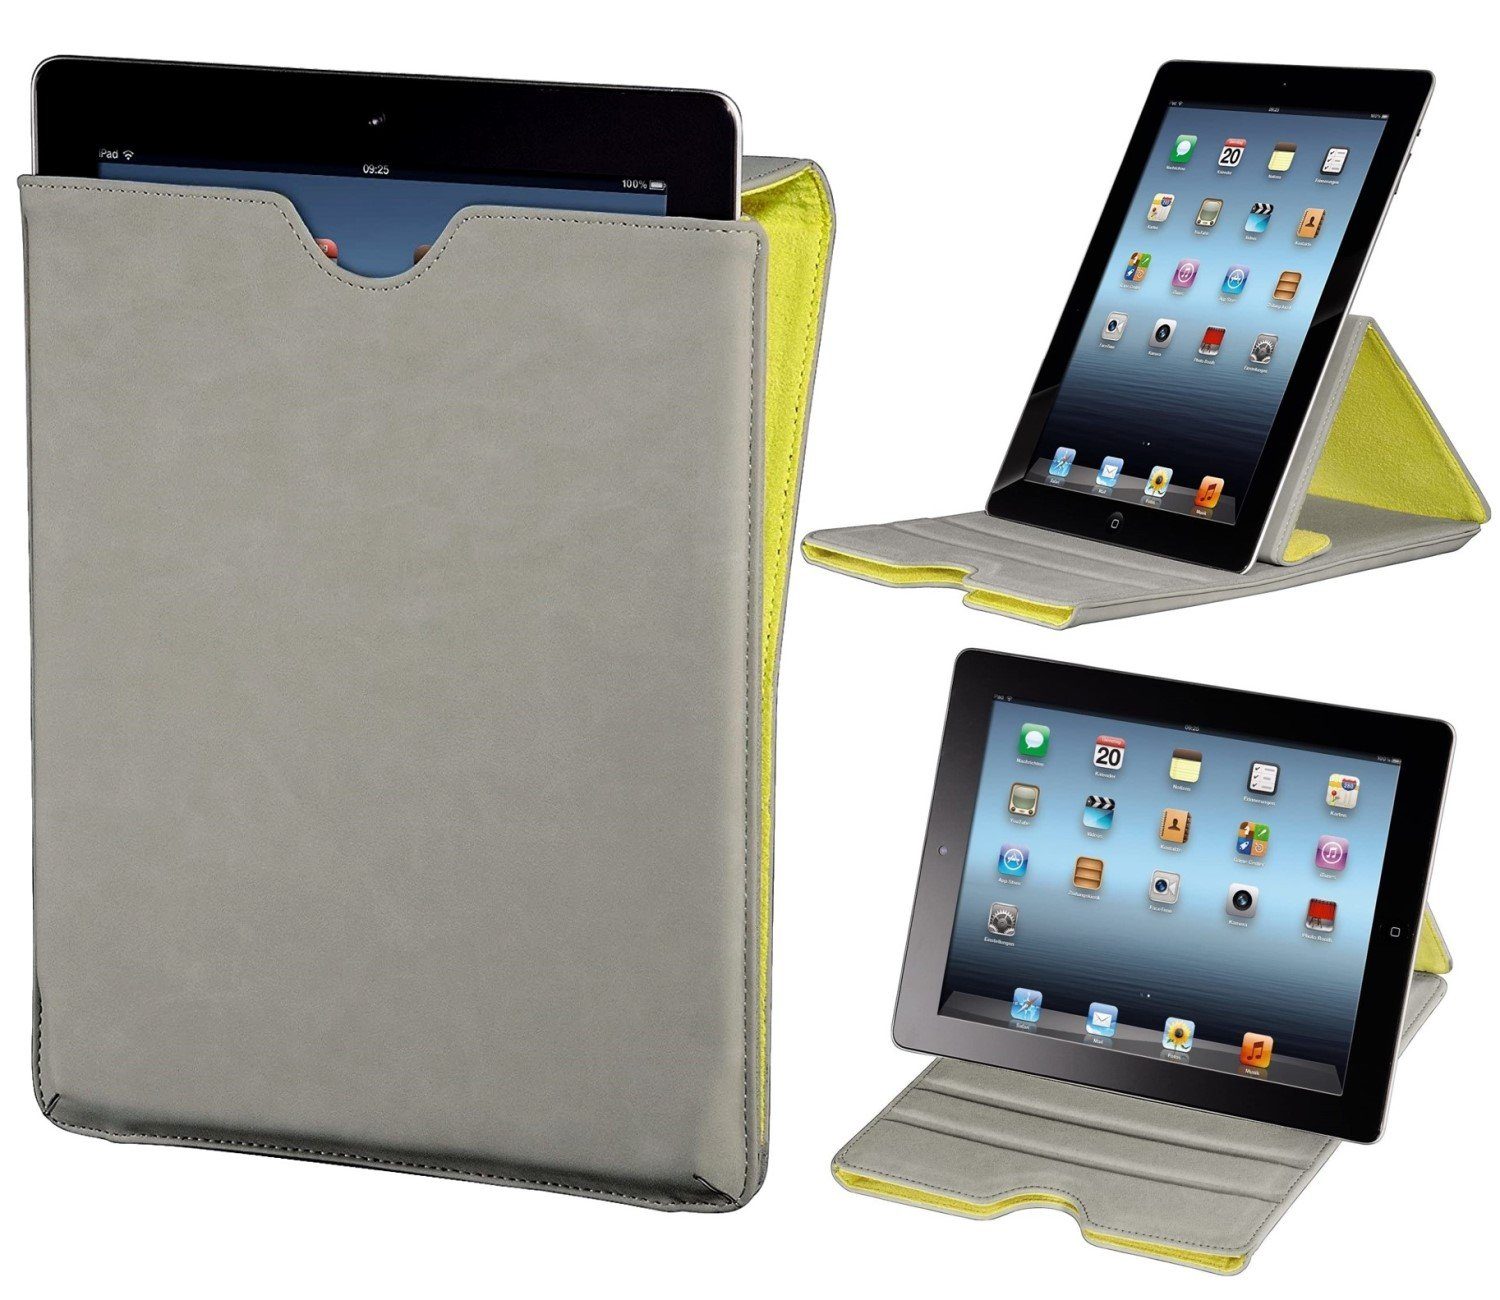 Hama Tablet-Hülle Tasche Ständer Cover Schutz-Hülle Case Grau, Klapp-Tasche für iPad Tablet PC 9,4" 9,7" 10" 10,1" 10,2" 10,4" 10,5"